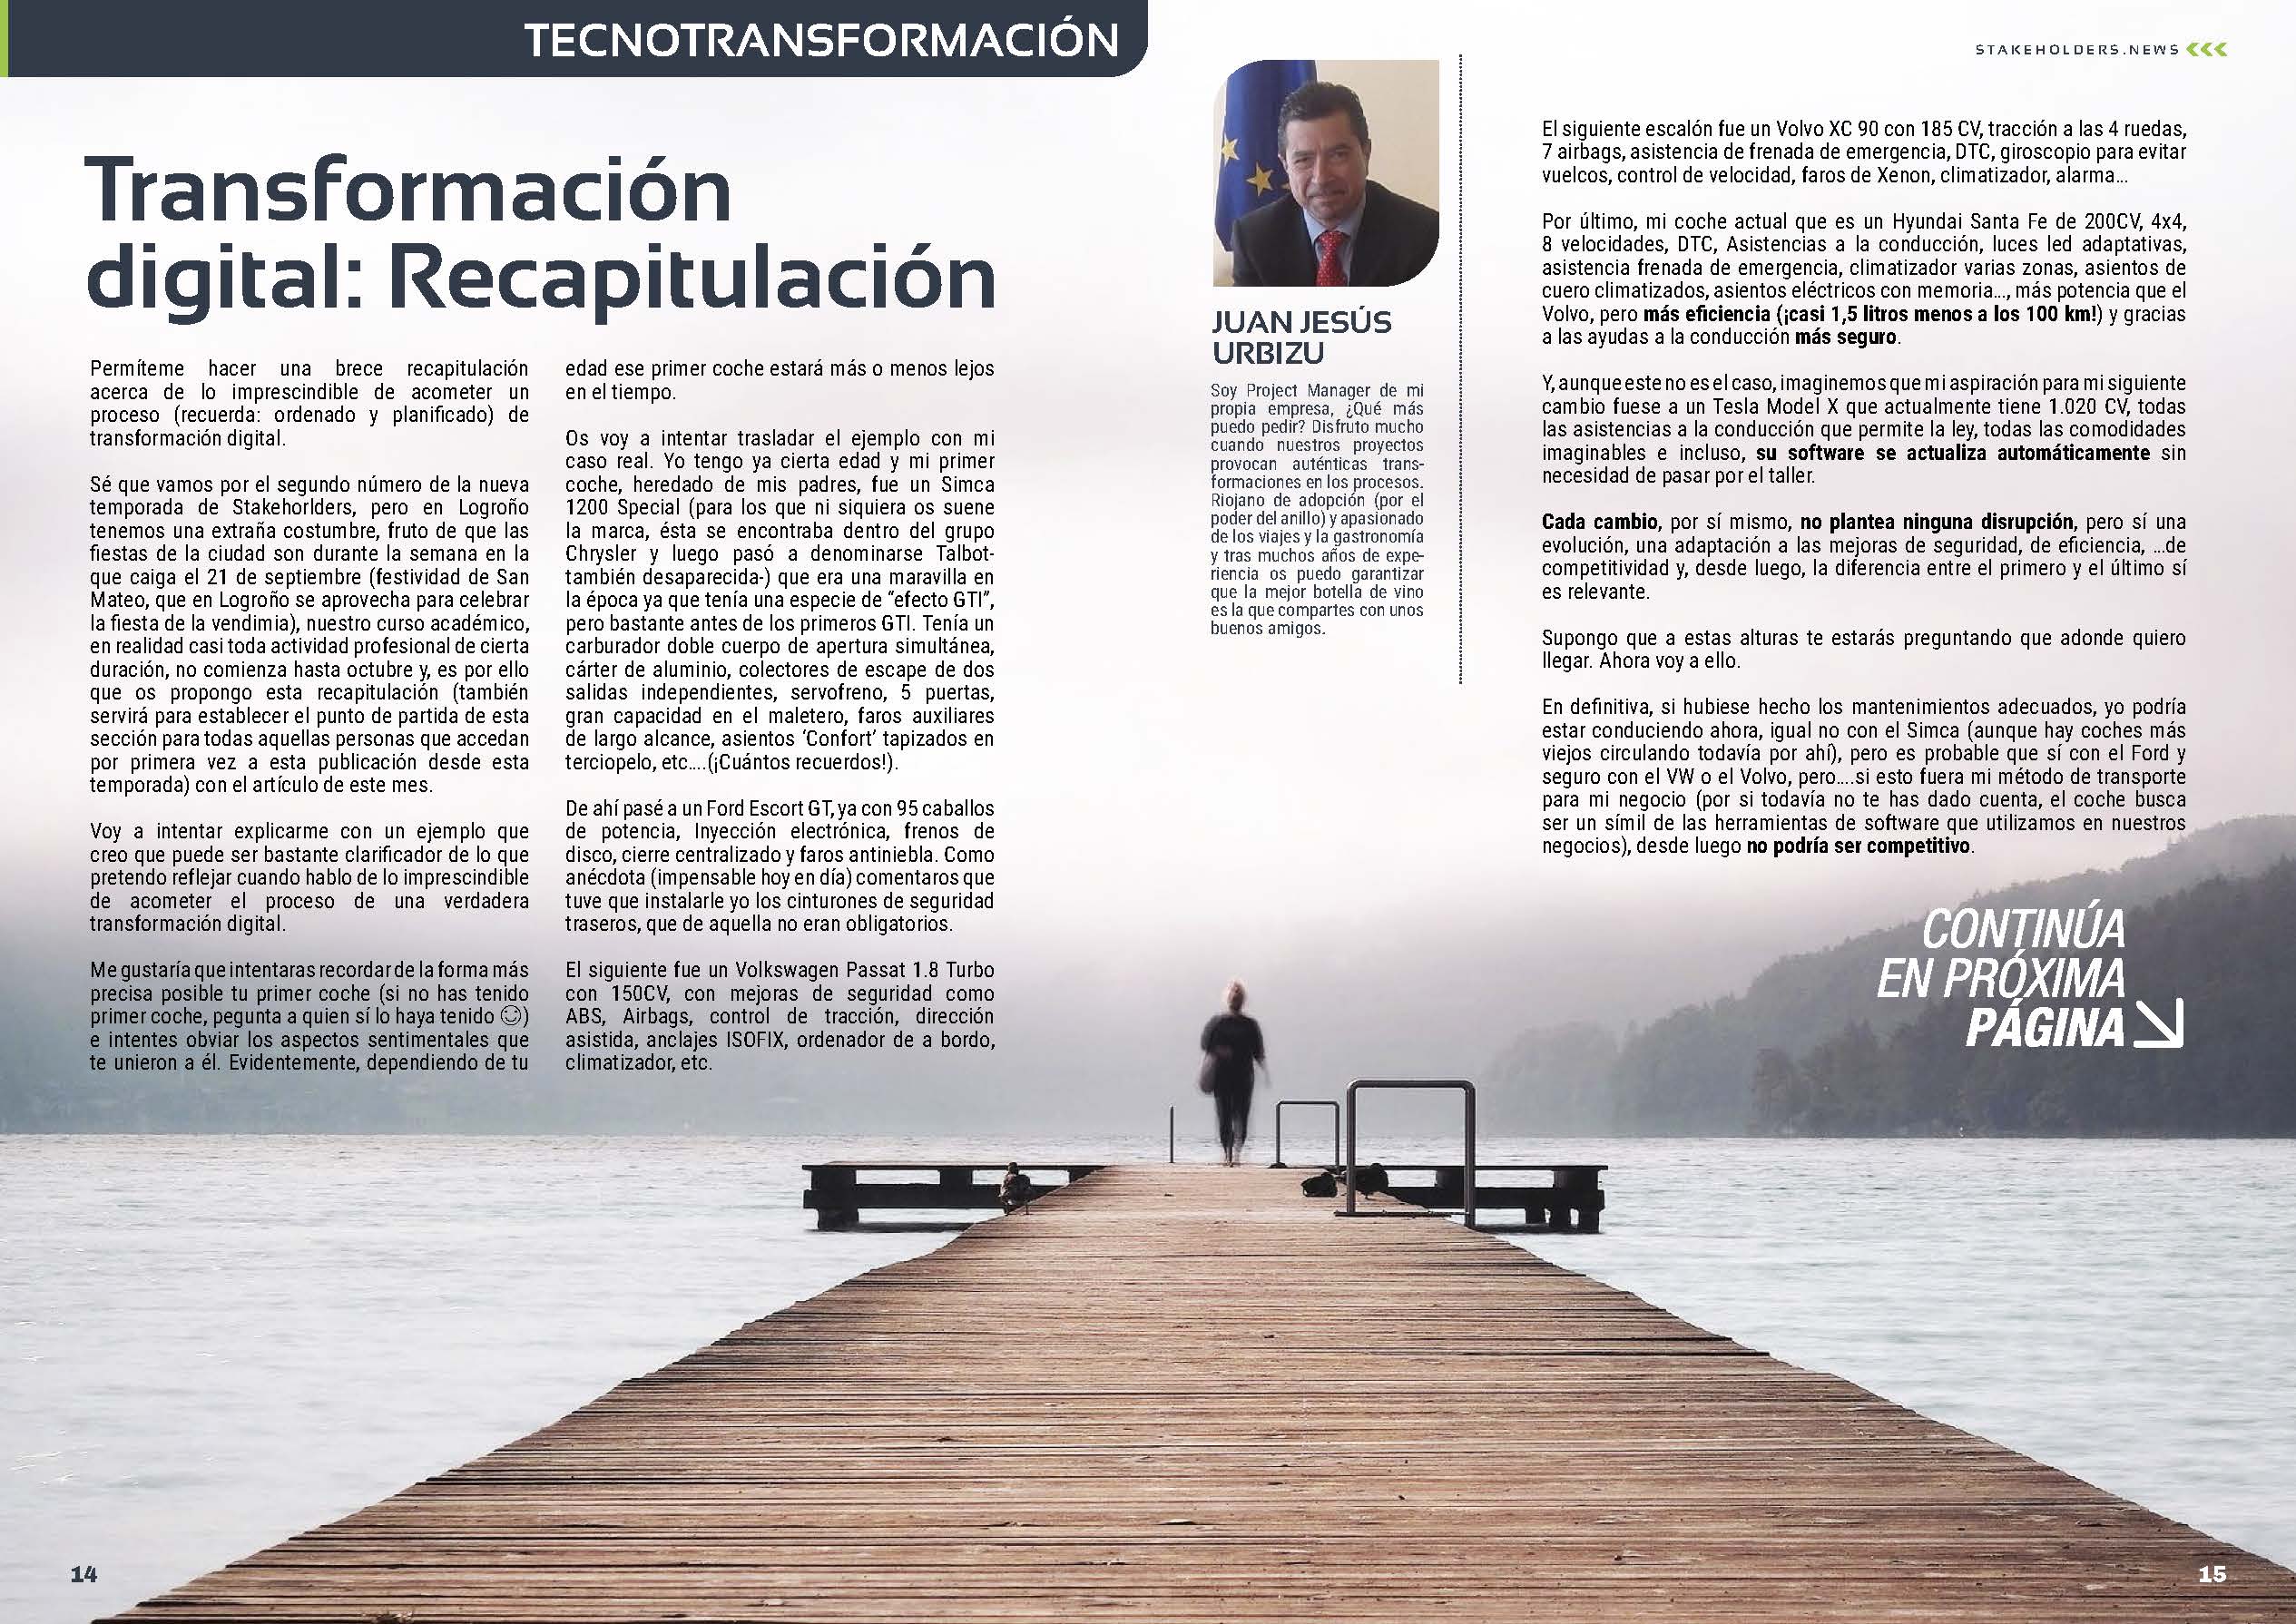 Artículo "Transformación digital: Recapitulación" de Juan Jesus Urbizu en la Sección " TecnoTransformación" de la Revista Stakeholders.news